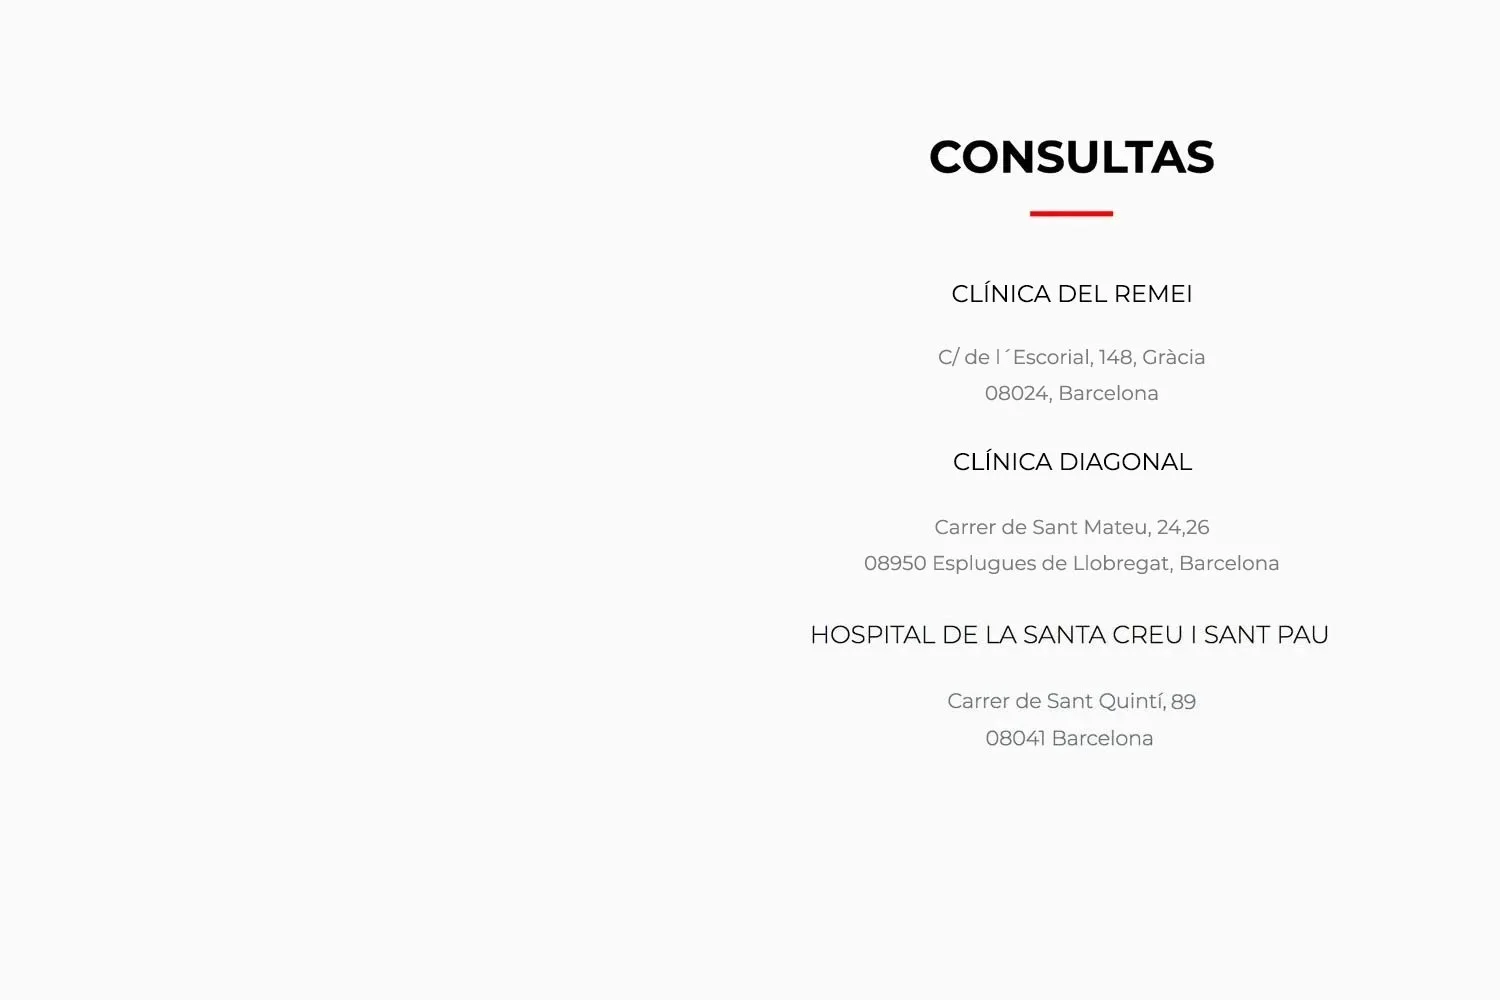 Dr de Quintana contacto ubicaciones de las consultas